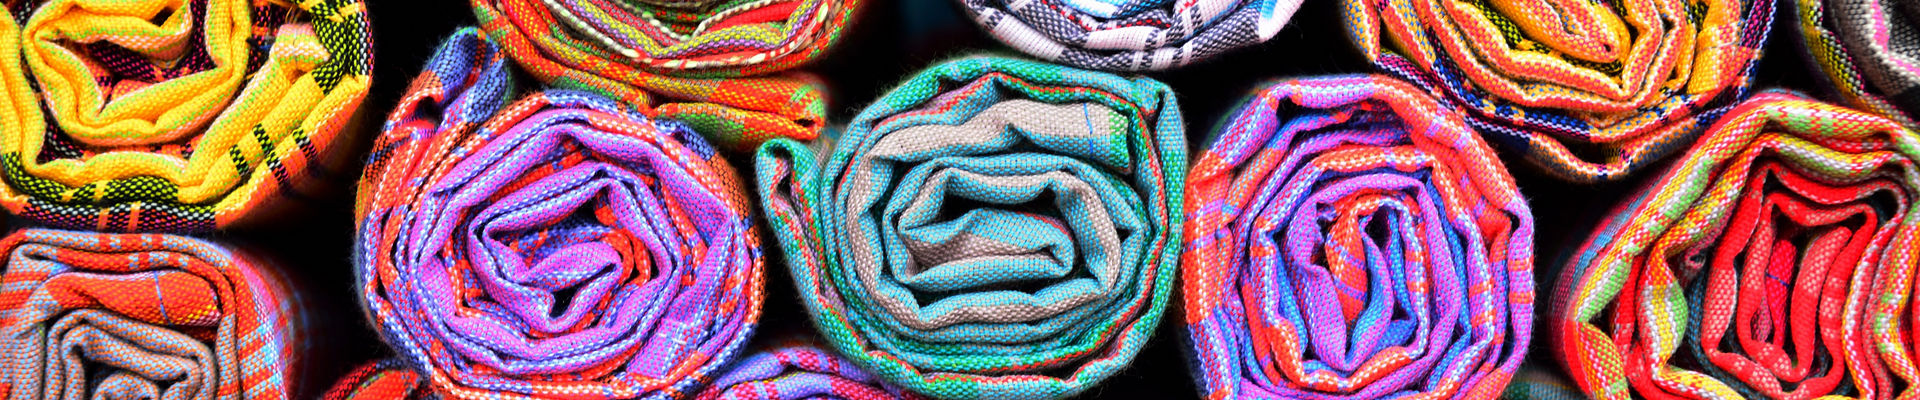 Telas de colores brillantes habilitadas por soluciones de silicona para la producción textil sostenible